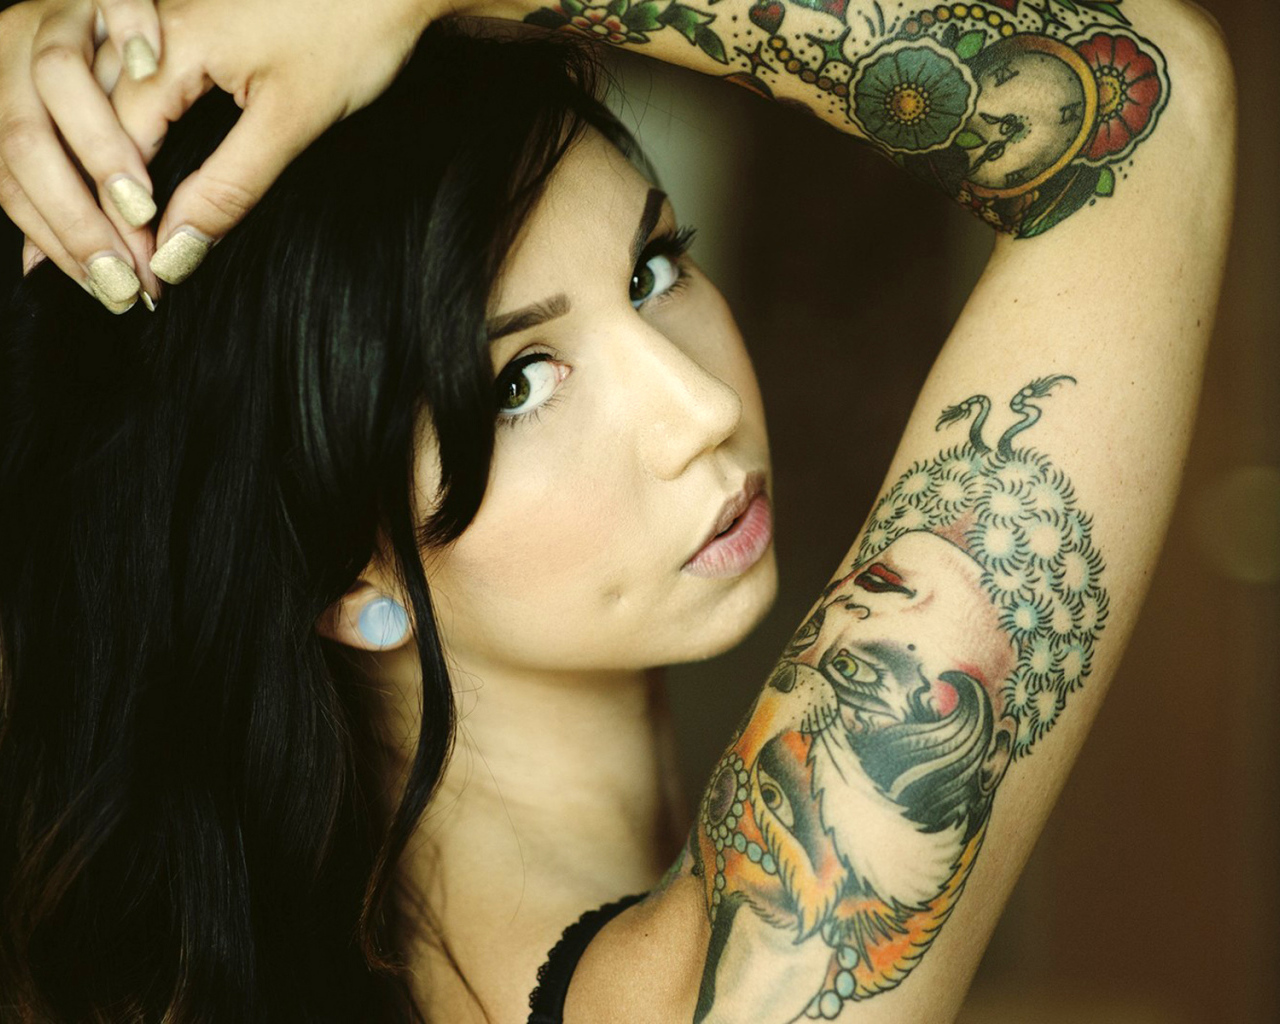 Черноволосая девушка с татуировкой на руке